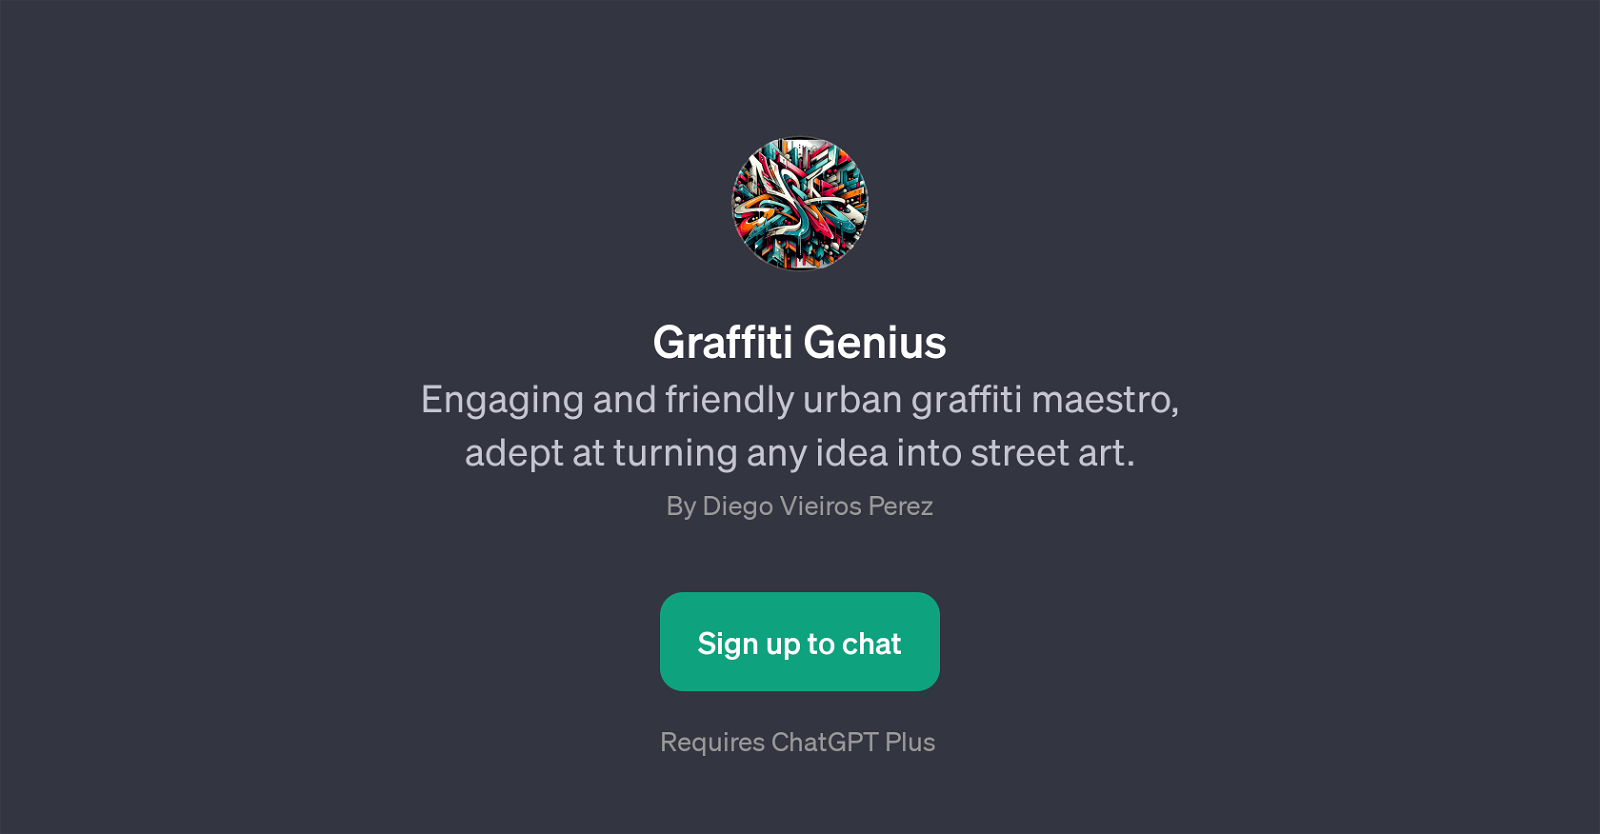 Graffiti Genius website